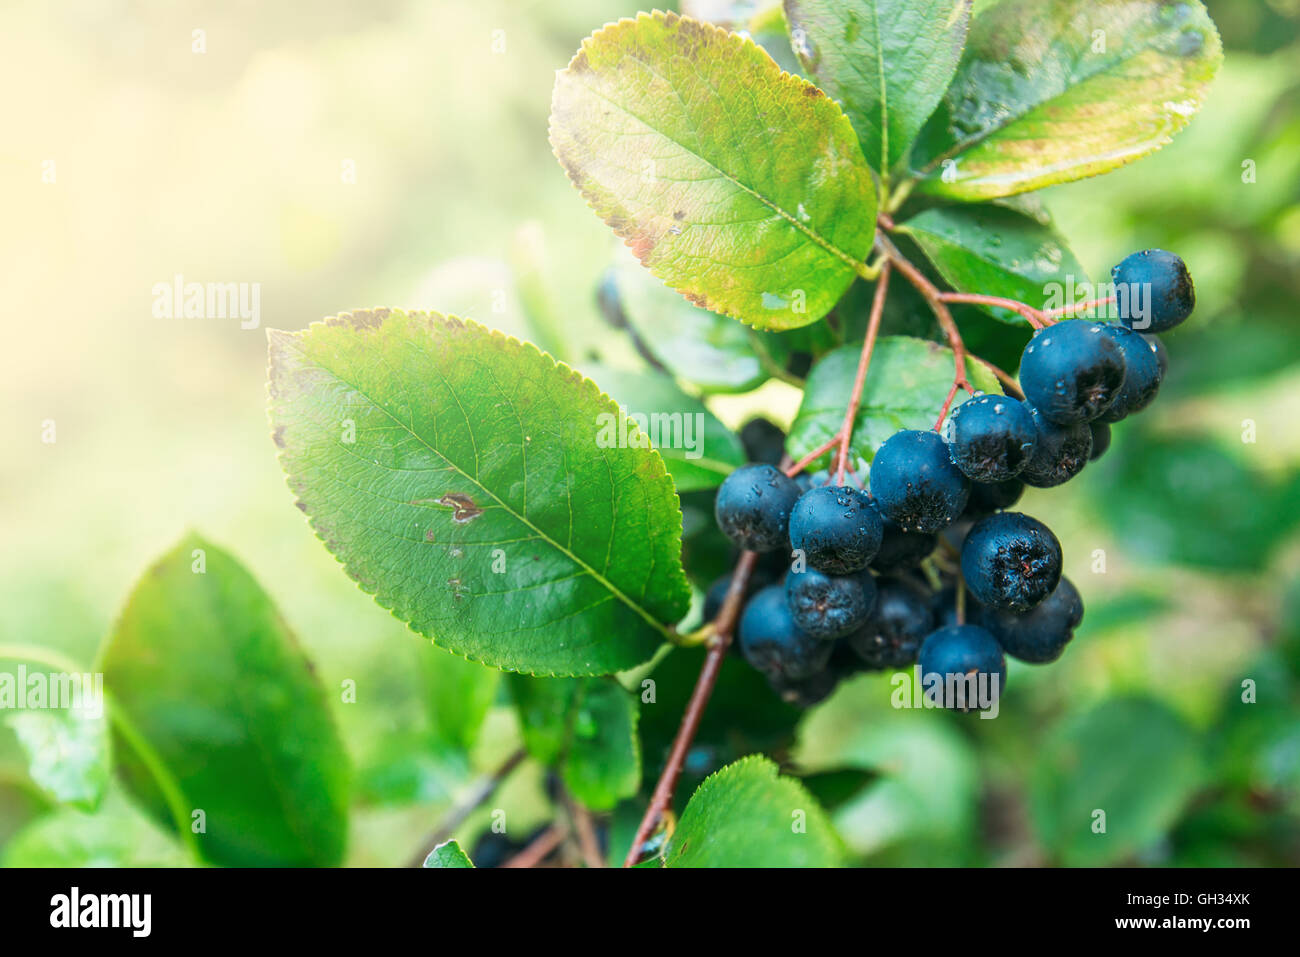 Petits fruits mûrs aronia fructueux sur la branche, selective focus Banque D'Images